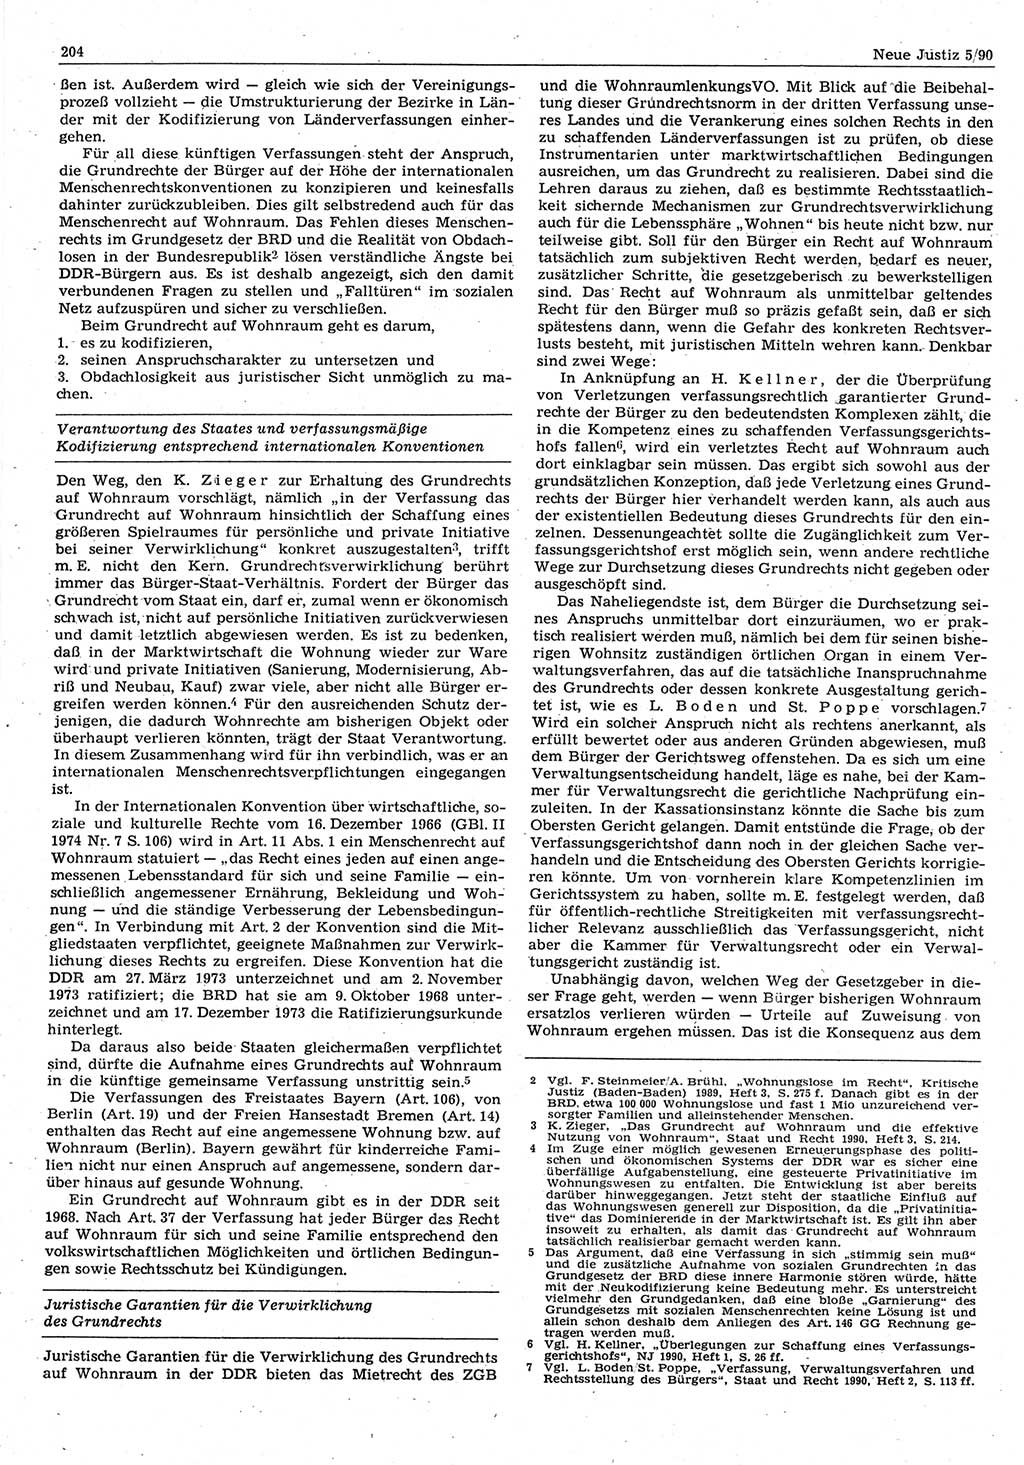 Neue Justiz (NJ), Zeitschrift für Rechtsetzung und Rechtsanwendung [Deutsche Demokratische Republik (DDR)], 44. Jahrgang 1990, Seite 204 (NJ DDR 1990, S. 204)